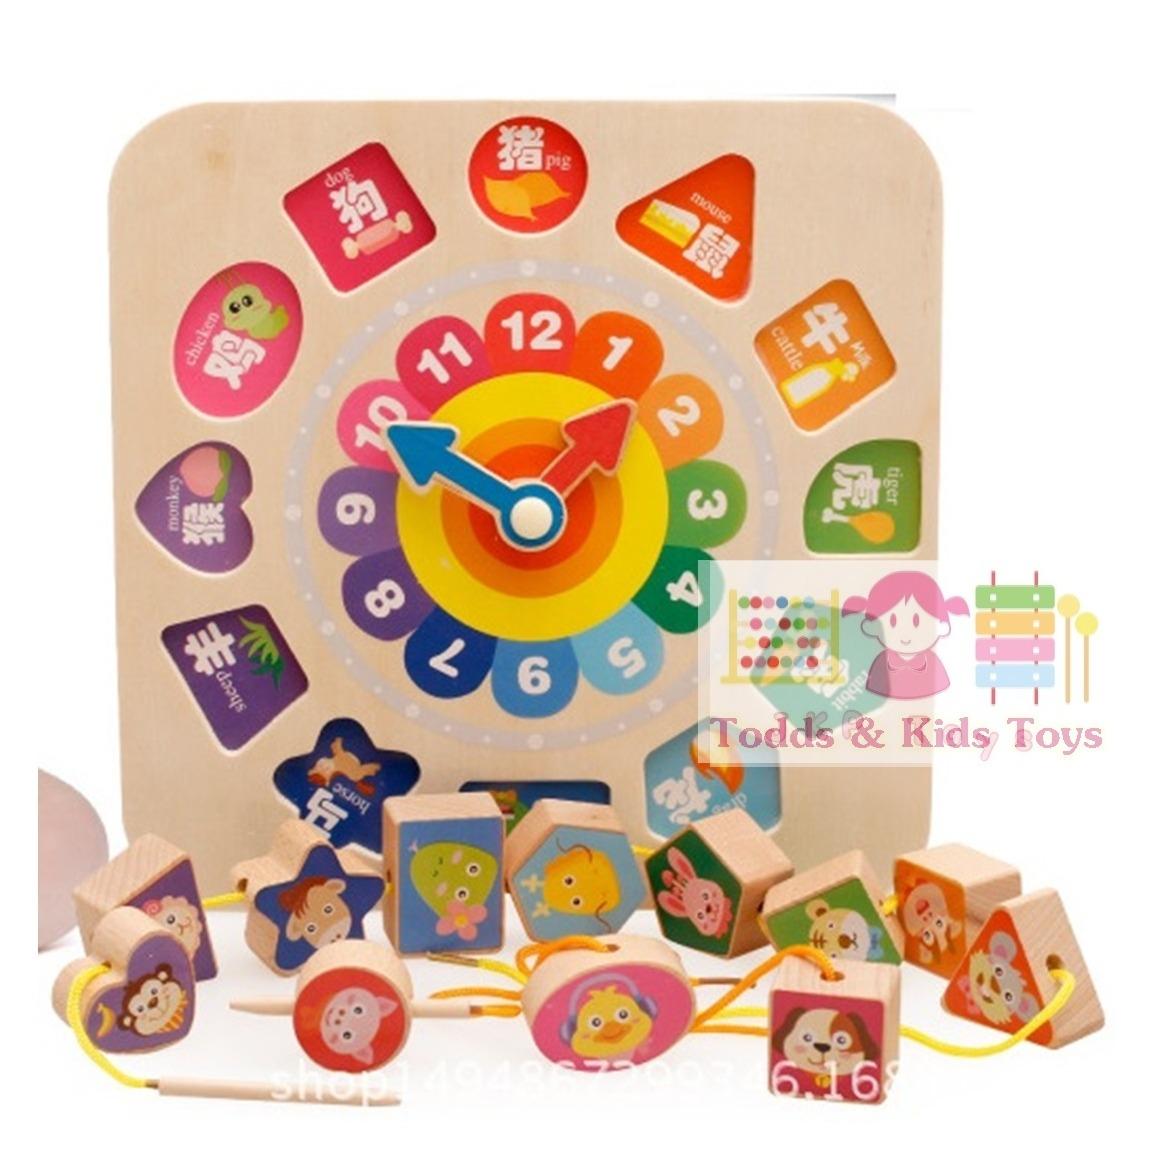 Todds & Kids Toys 3 in 1 ร้อยเชือก จับคู่บล็อค นาฬิกาสอนเวลาเเละกิจวัตรประจำวัน